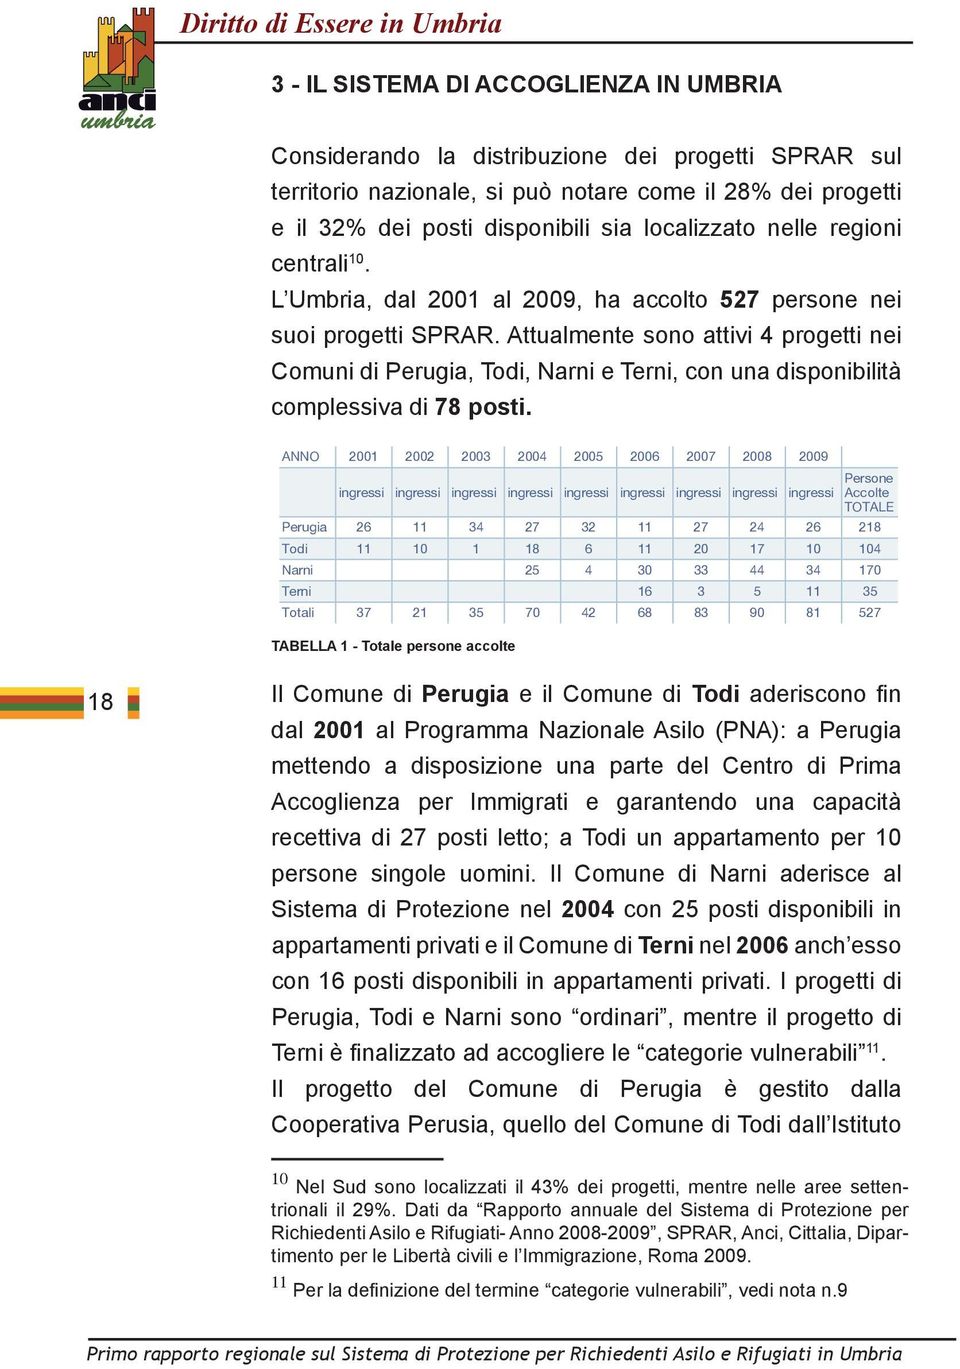 Attualmente sono attivi 4 progetti nei Comuni di Perugia, Todi, Narni e Terni, con una disponibilità complessiva di 78 posti.